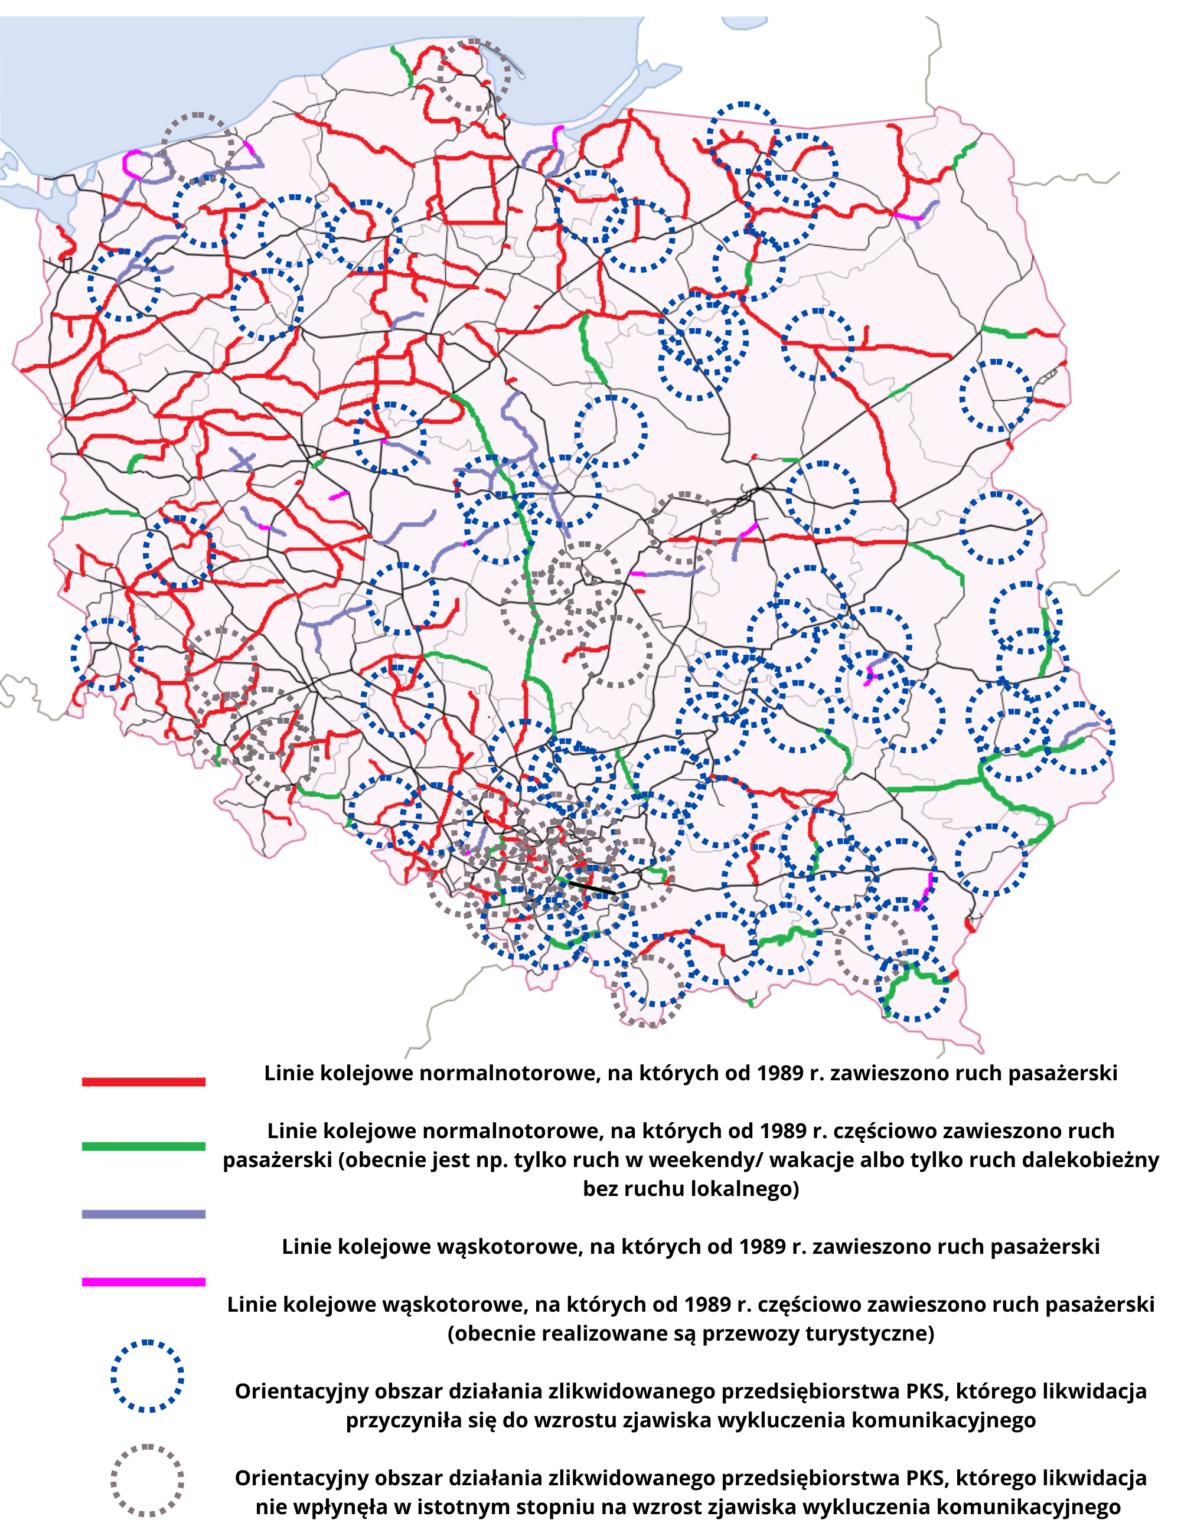 Mapa, na której widać, ile linii kolejowych zostało zlikwidowanych po 1989 roku. Duża część mapy zaznaczona kolorem czerwonym, oznaczającym likwidację linii